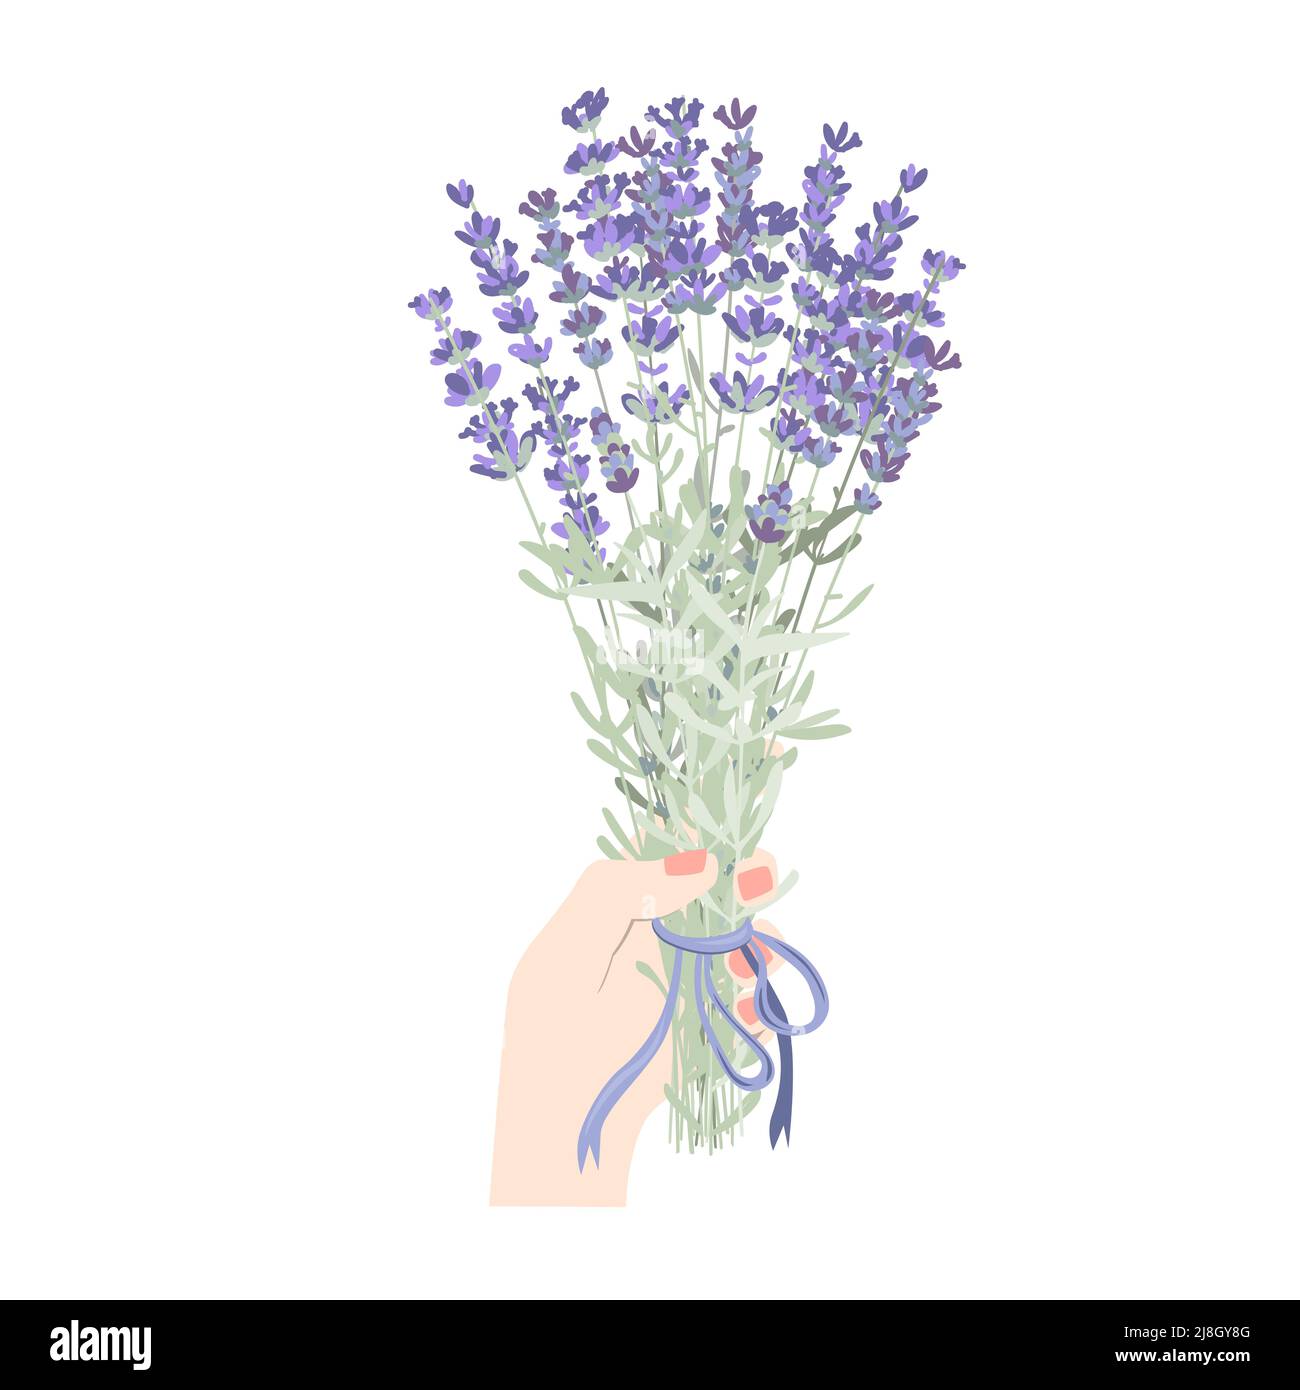 Main femelle tenant un bouquet de lavande en fleur. Main de femme avec fleurs lavandula isolées sur fond blanc. Élément floral botanique vectoriel plat Illustration de Vecteur